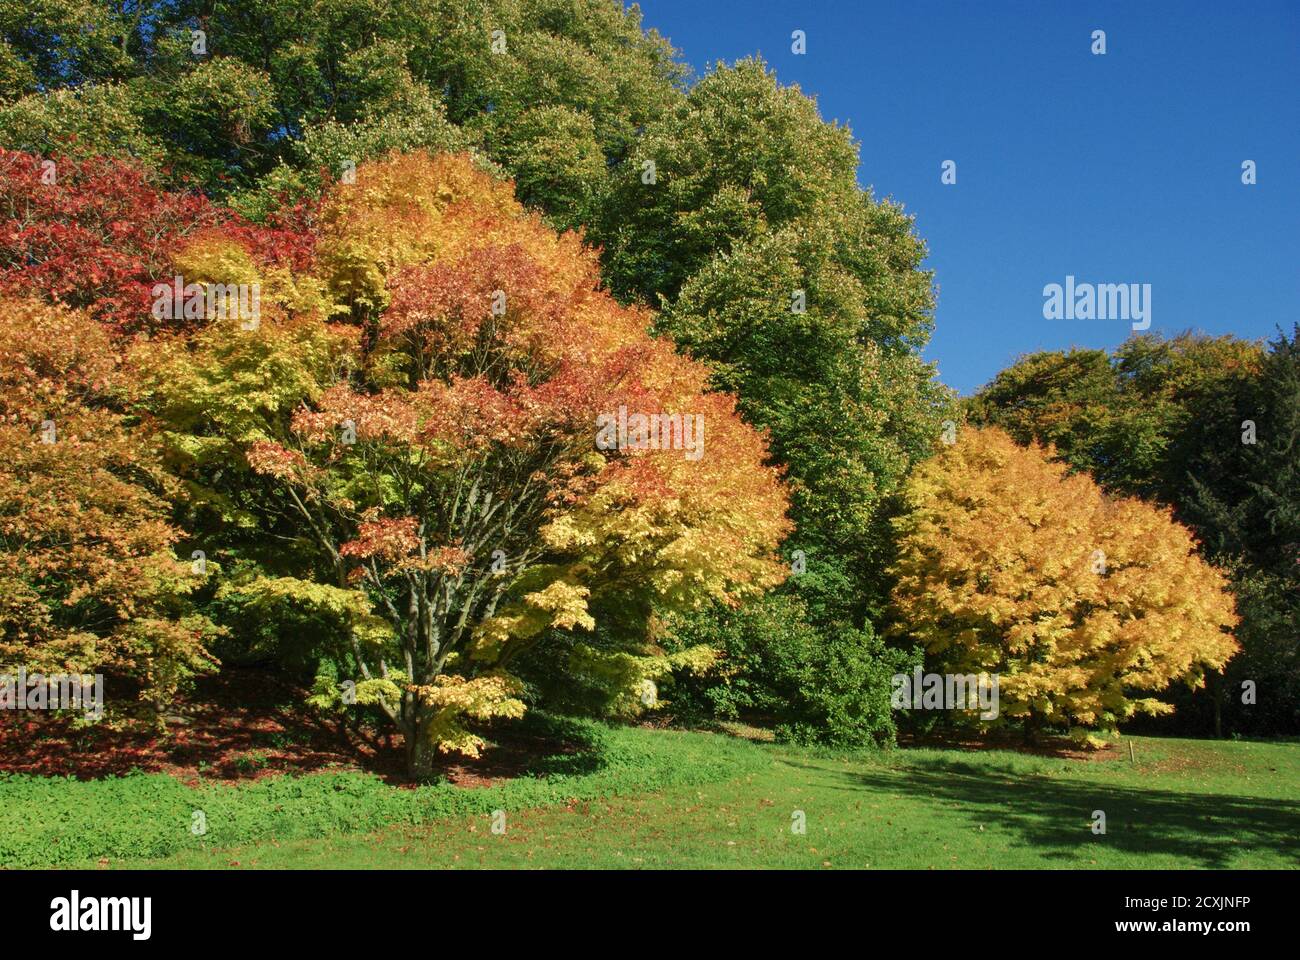 Couleurs d'automne à l'arboretum de Batsford, Cotswolds, Royaume-Uni Banque D'Images